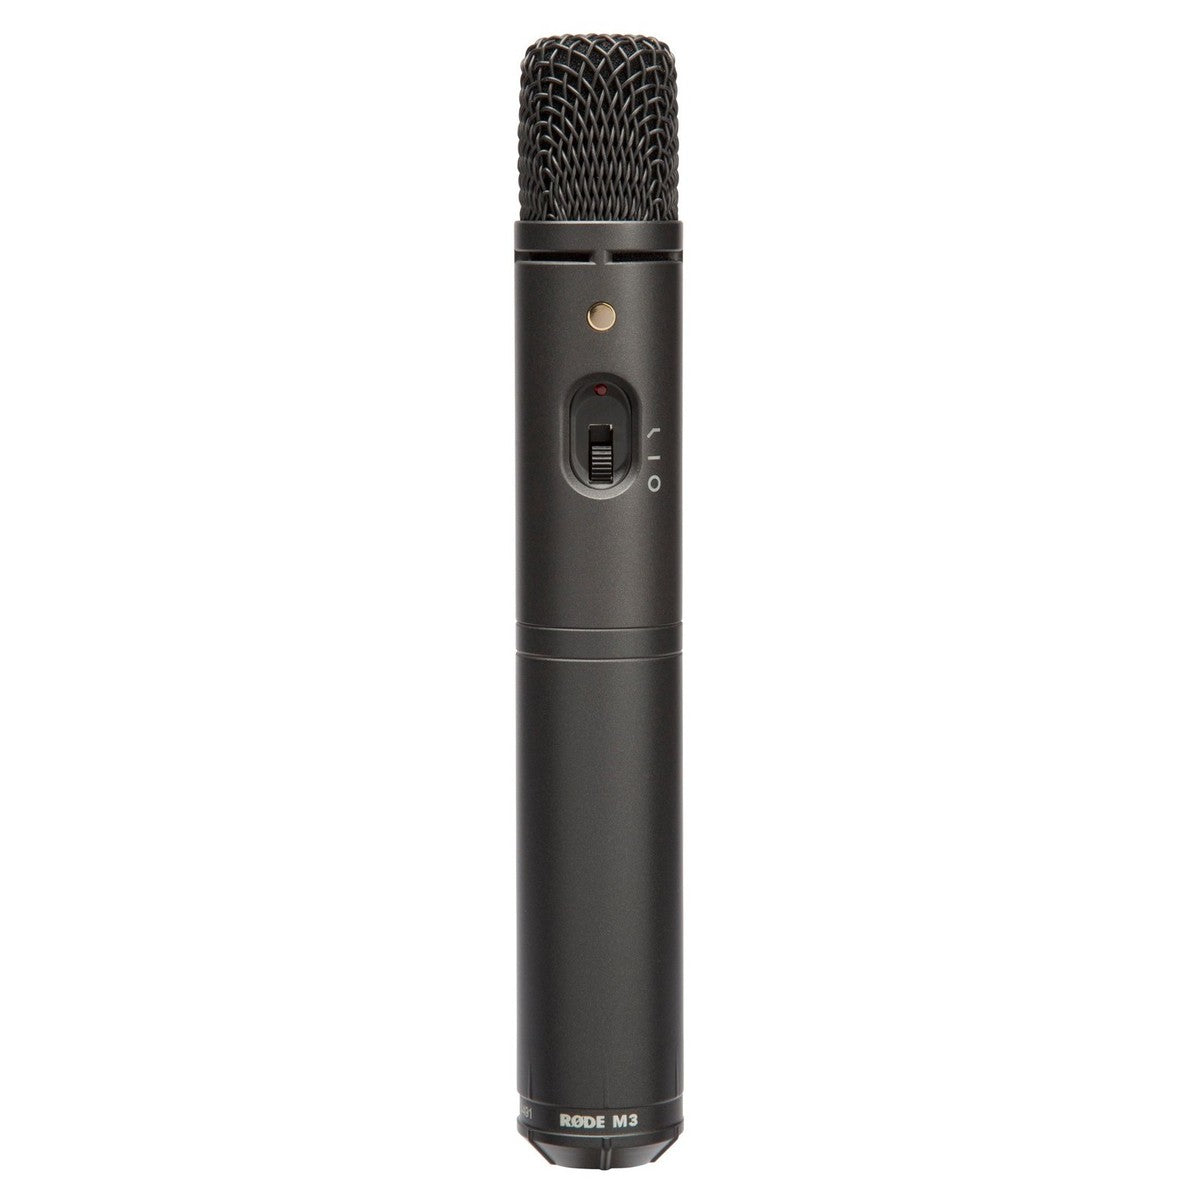 RØDE M3 Versatile Cardioid Condenser Microphone